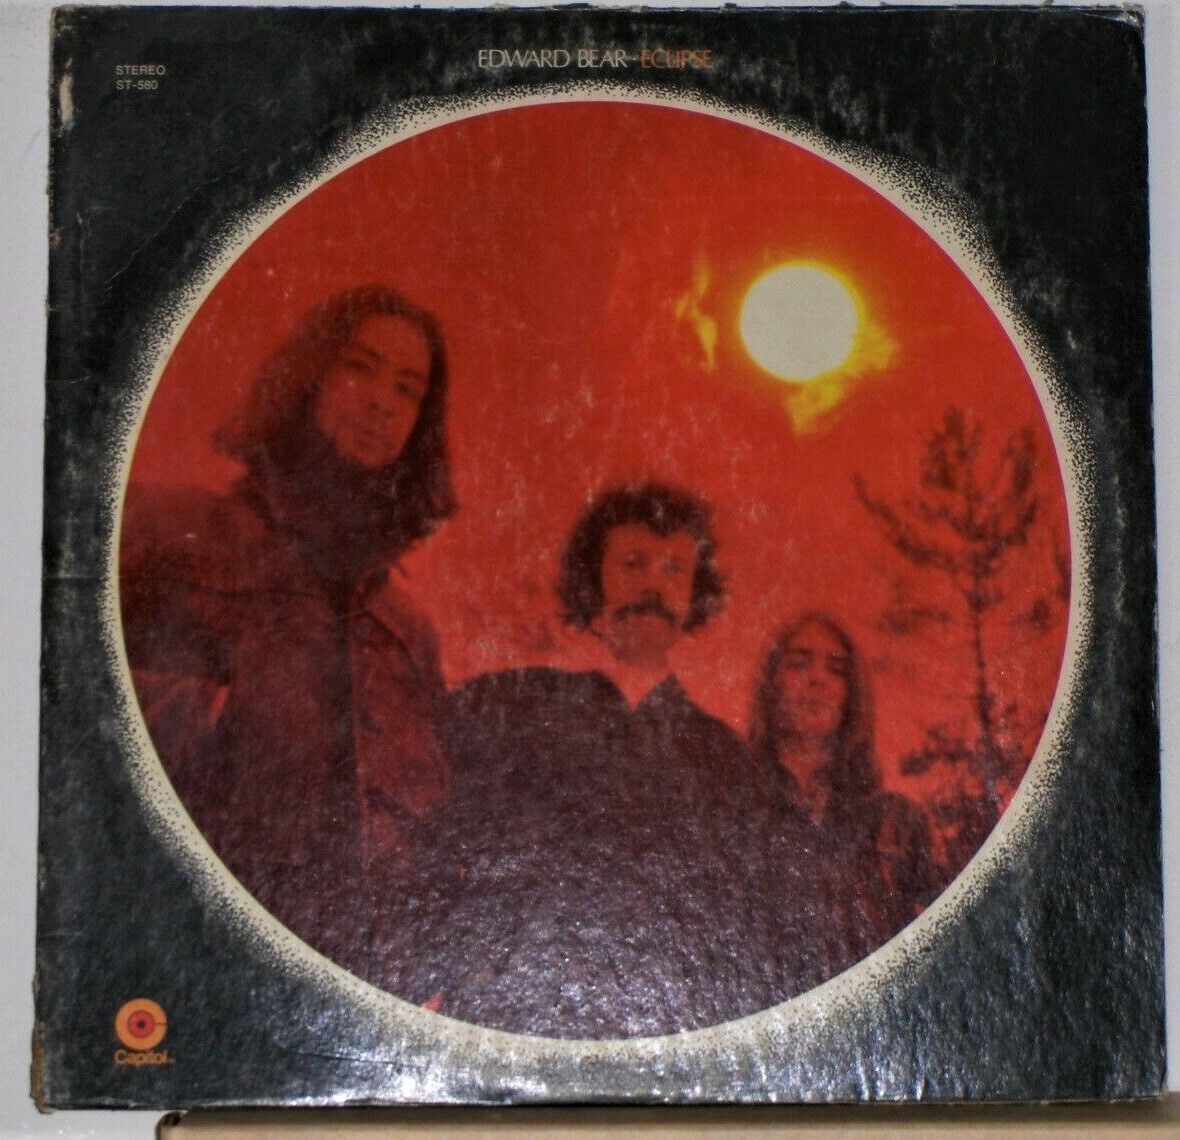 Edward Bear - Eclipse - 1970 Vinyl LP Record Album